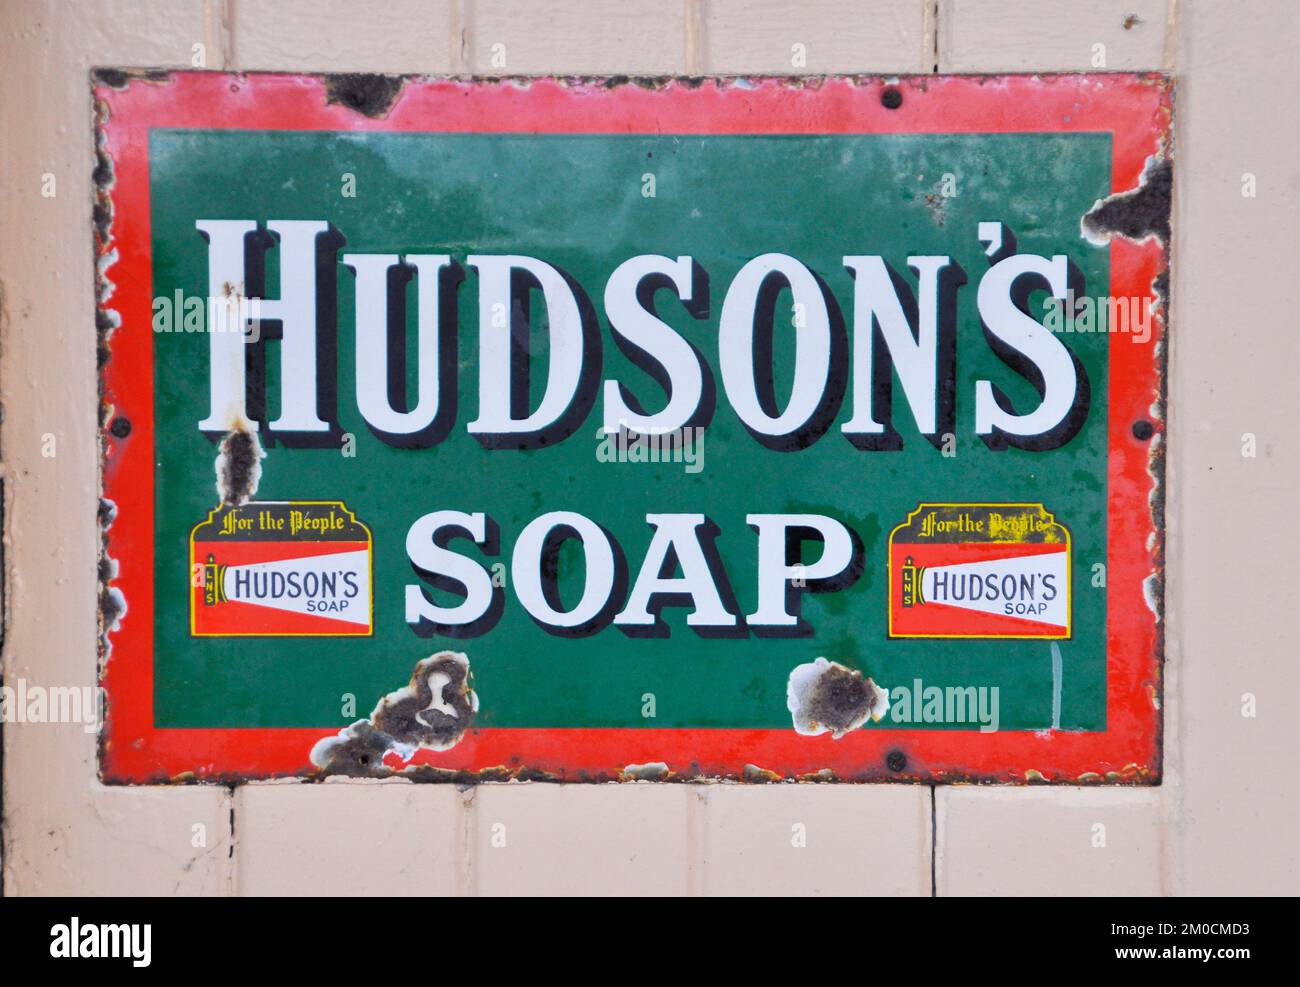 Enamelled metallo segno, pubblicità Hudson sapone fotografato alla stazione ferroviaria di Tenterden in Kent, Inghilterra, Regno Unito Foto Stock